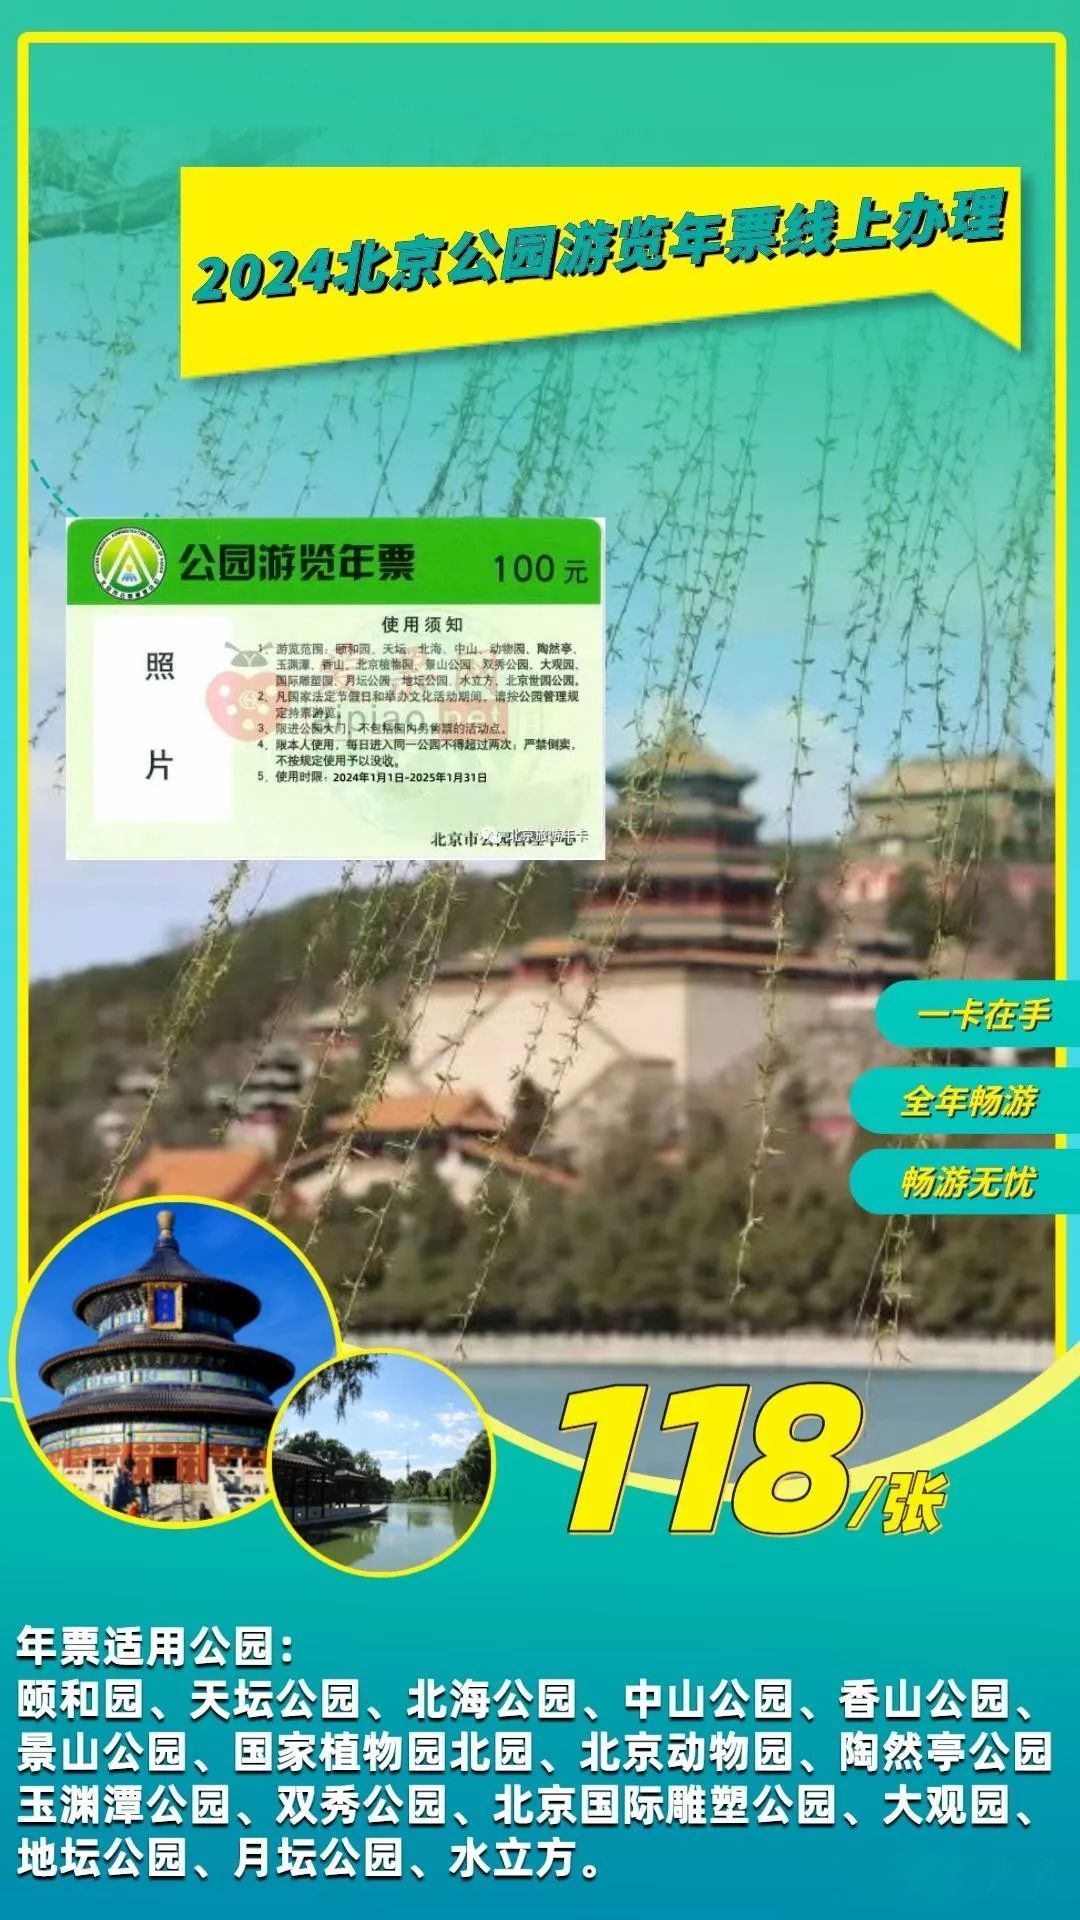 2024北京公园游览年票适用范围+办理入口+有效期限+景点介绍